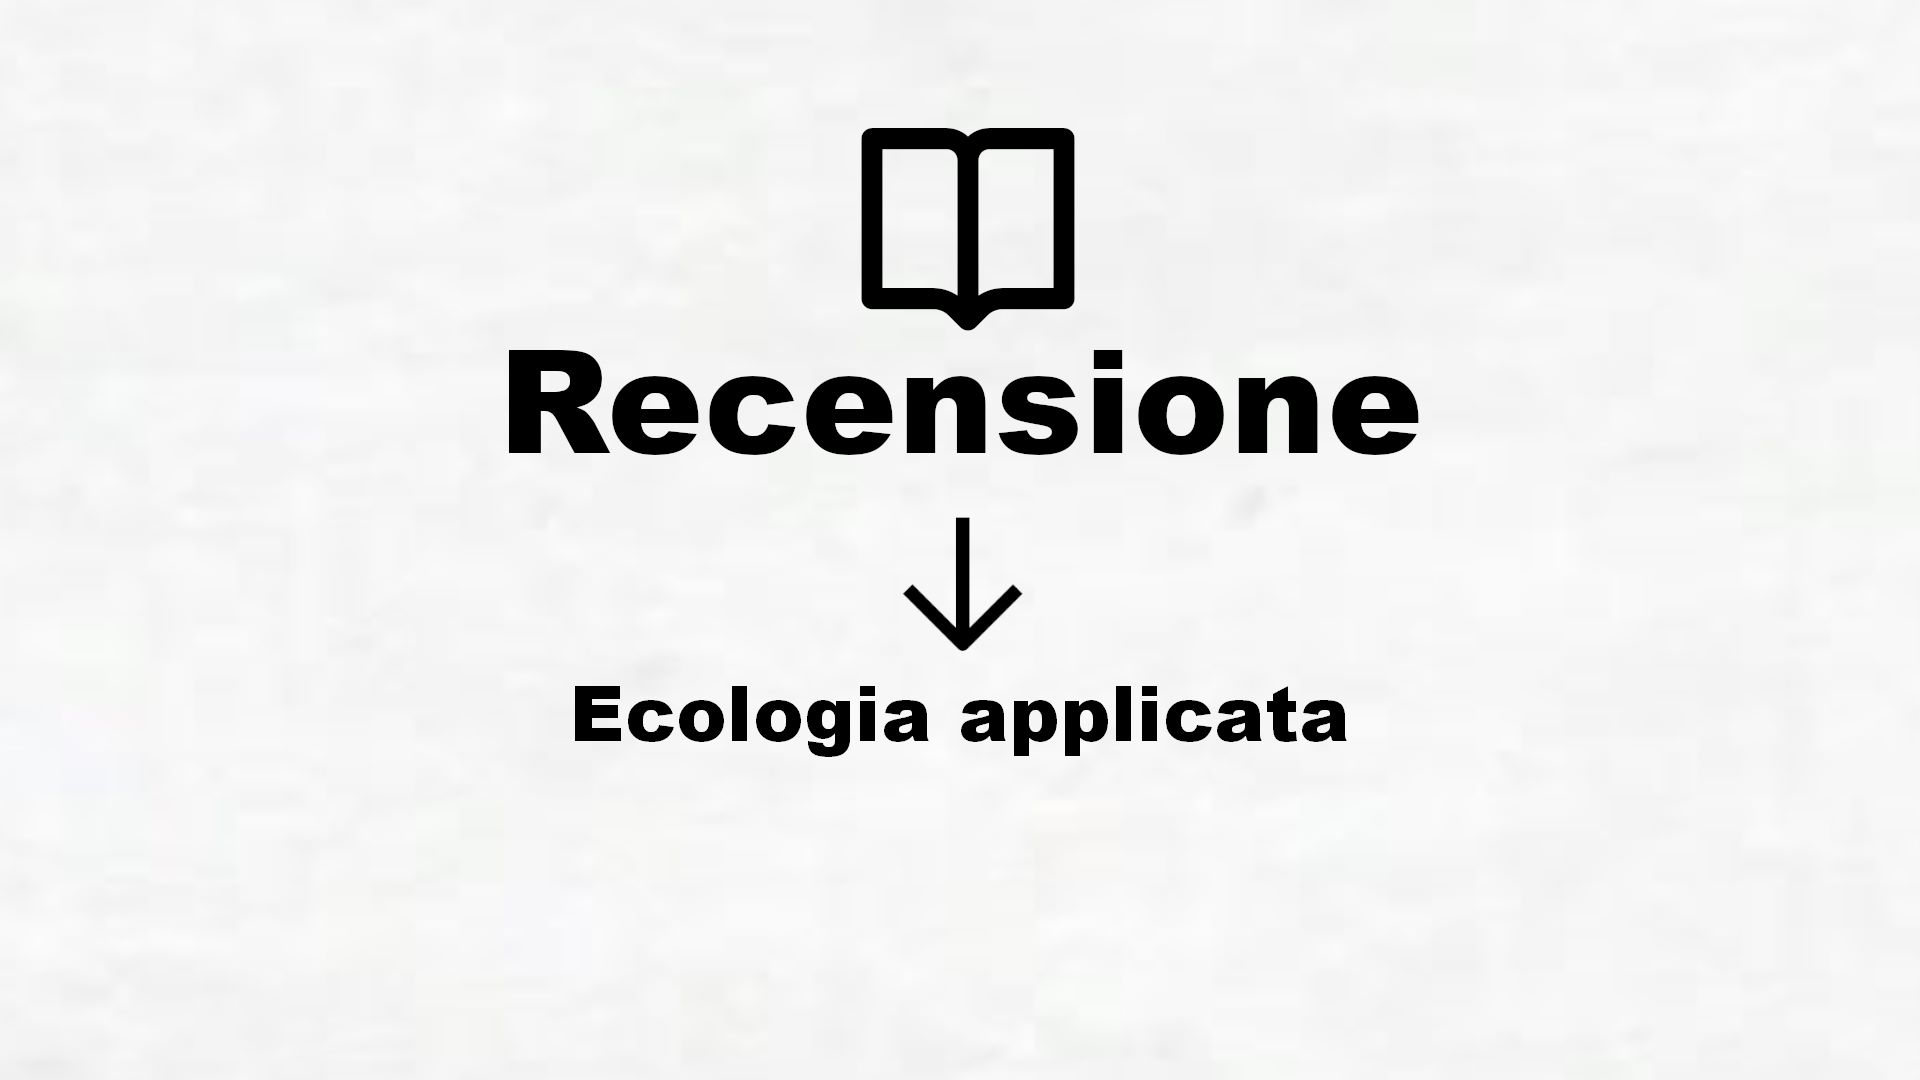 Ecologia applicata – Recensione Libro